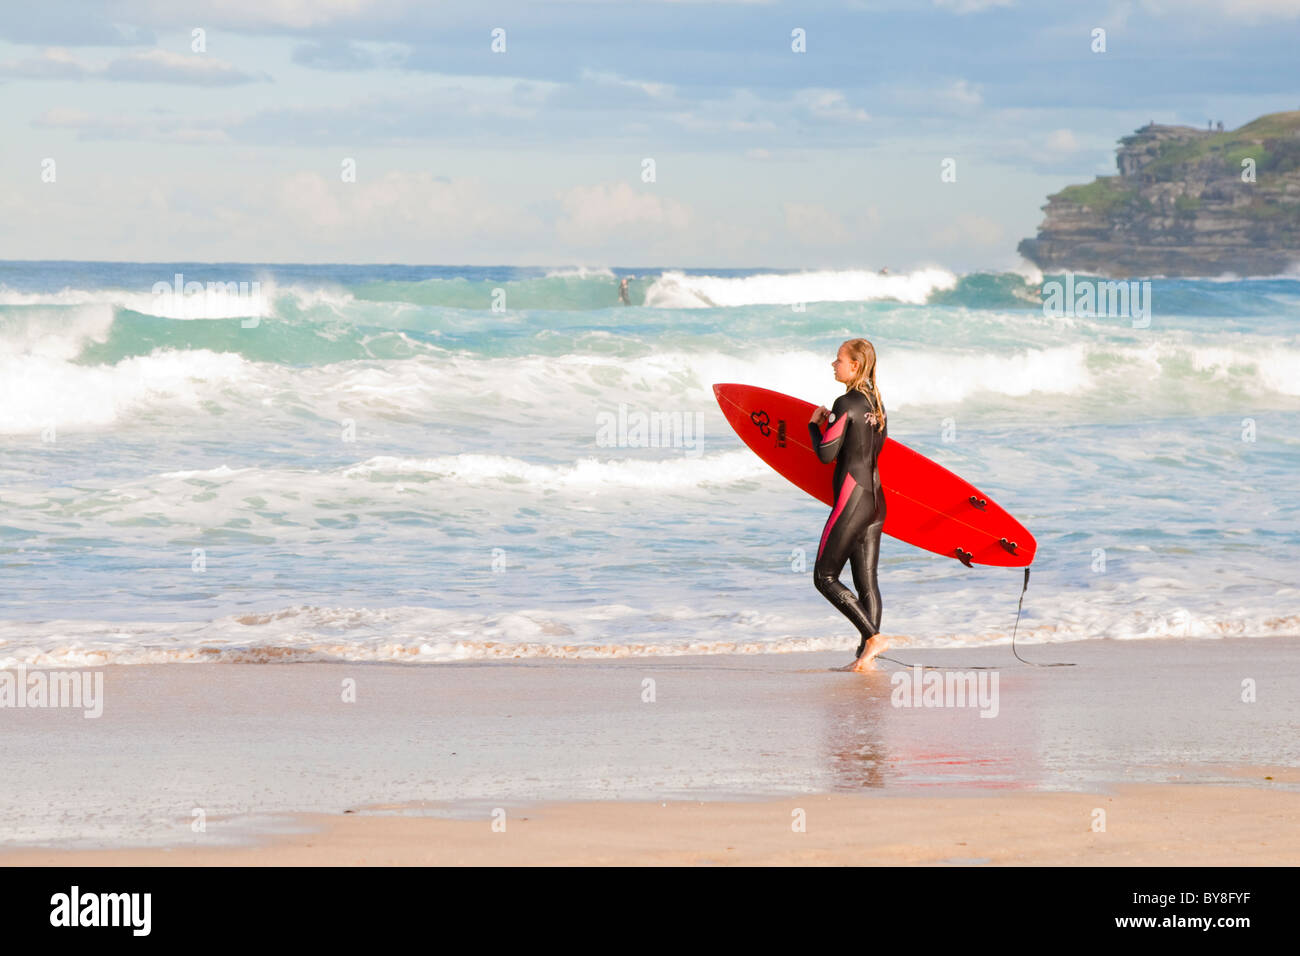 Surfer femenina entra en las olas en la playa de Bondi, en Sydney, Australia Foto de stock